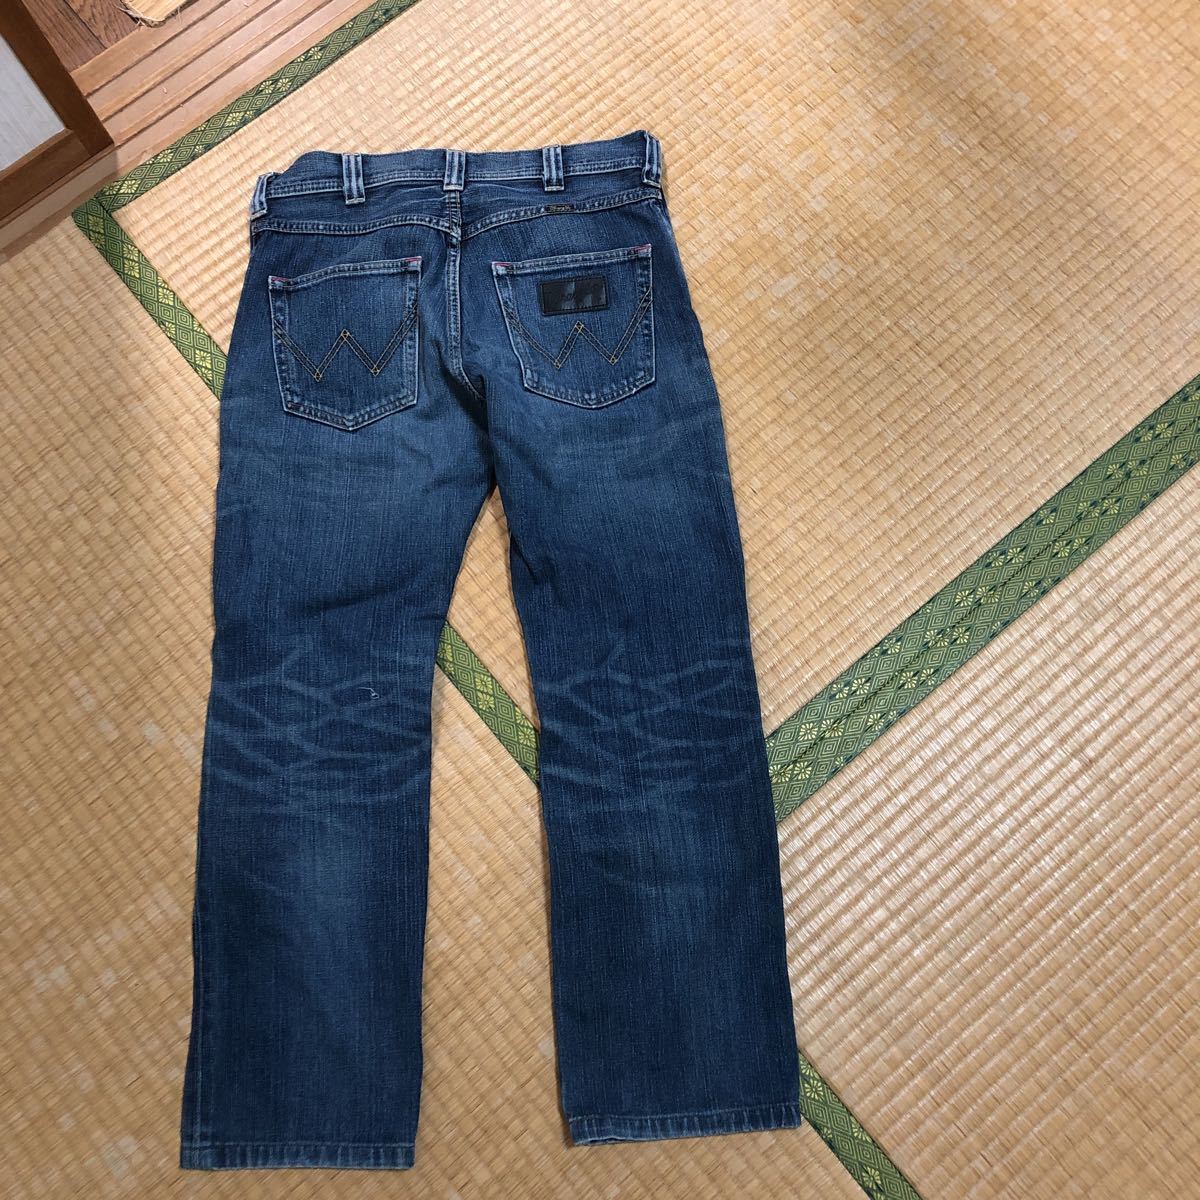 [Wrangler] Wrangler Edwin коммерческое предприятие Denim брюки джинсы ji- хлеб женский size 27 длинные брюки низ casual 